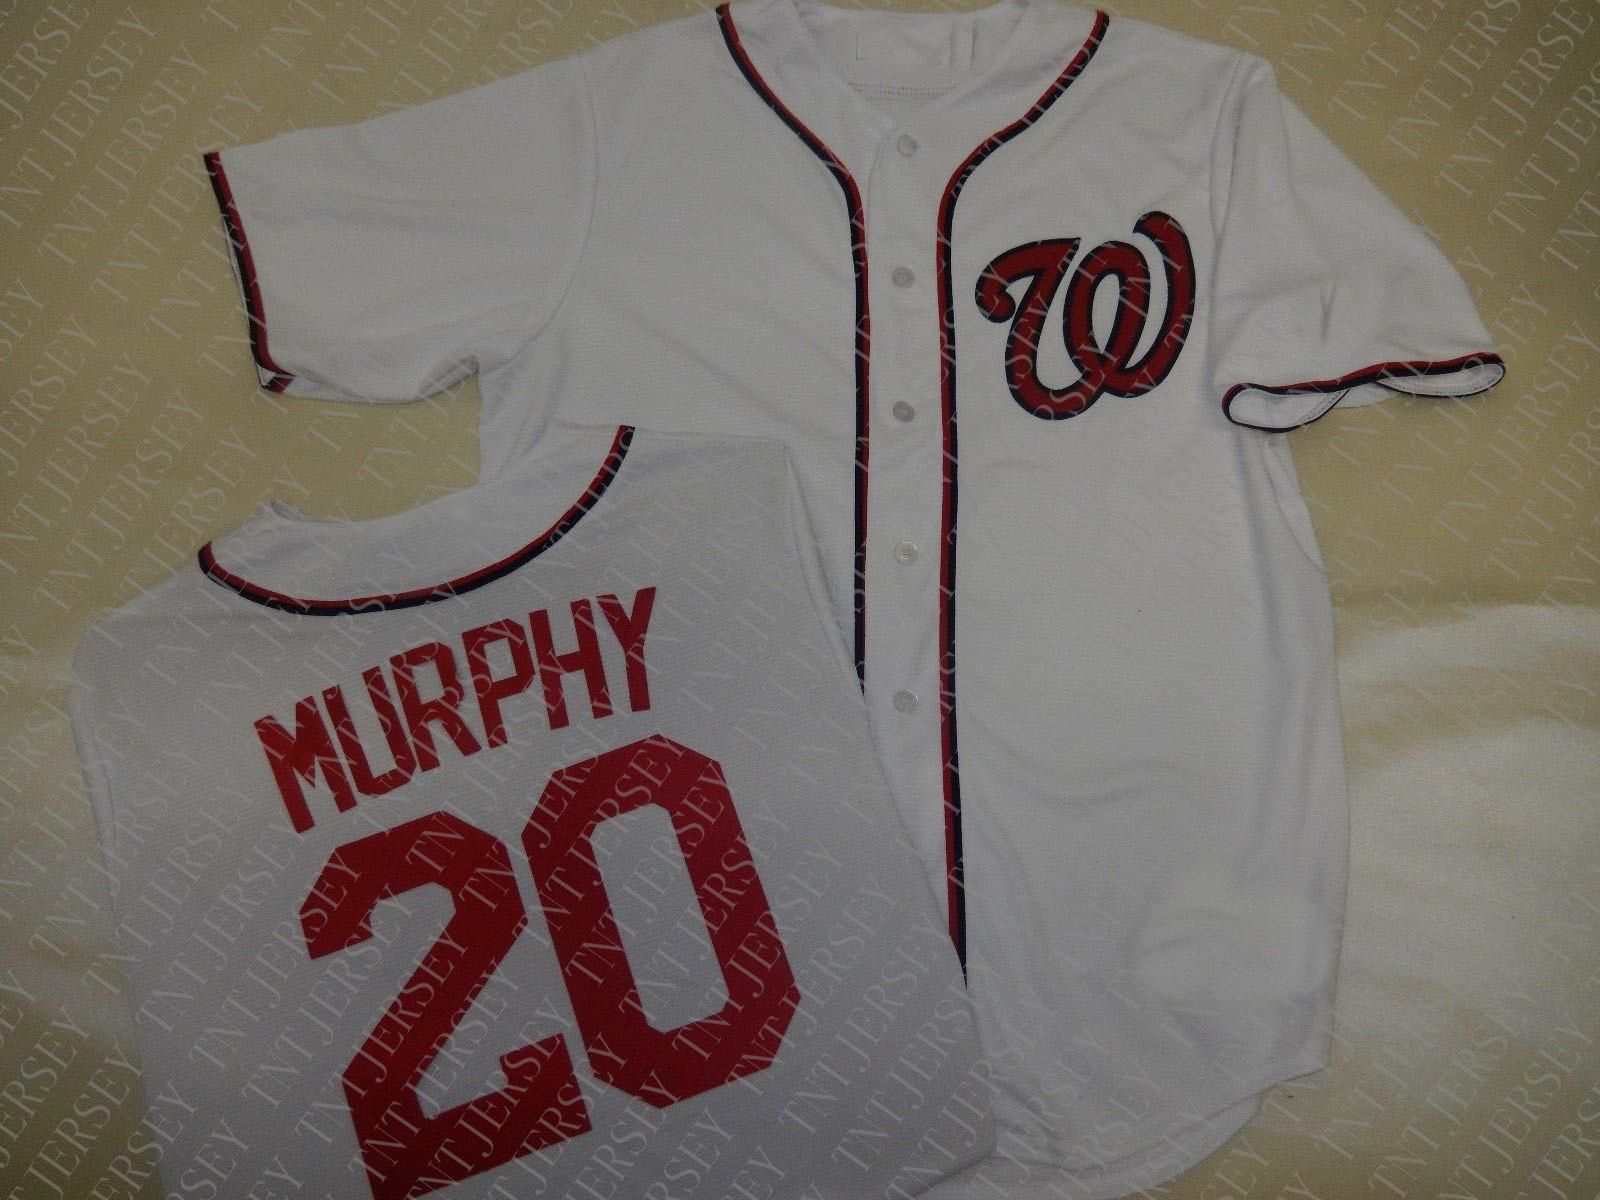 murphy jersey